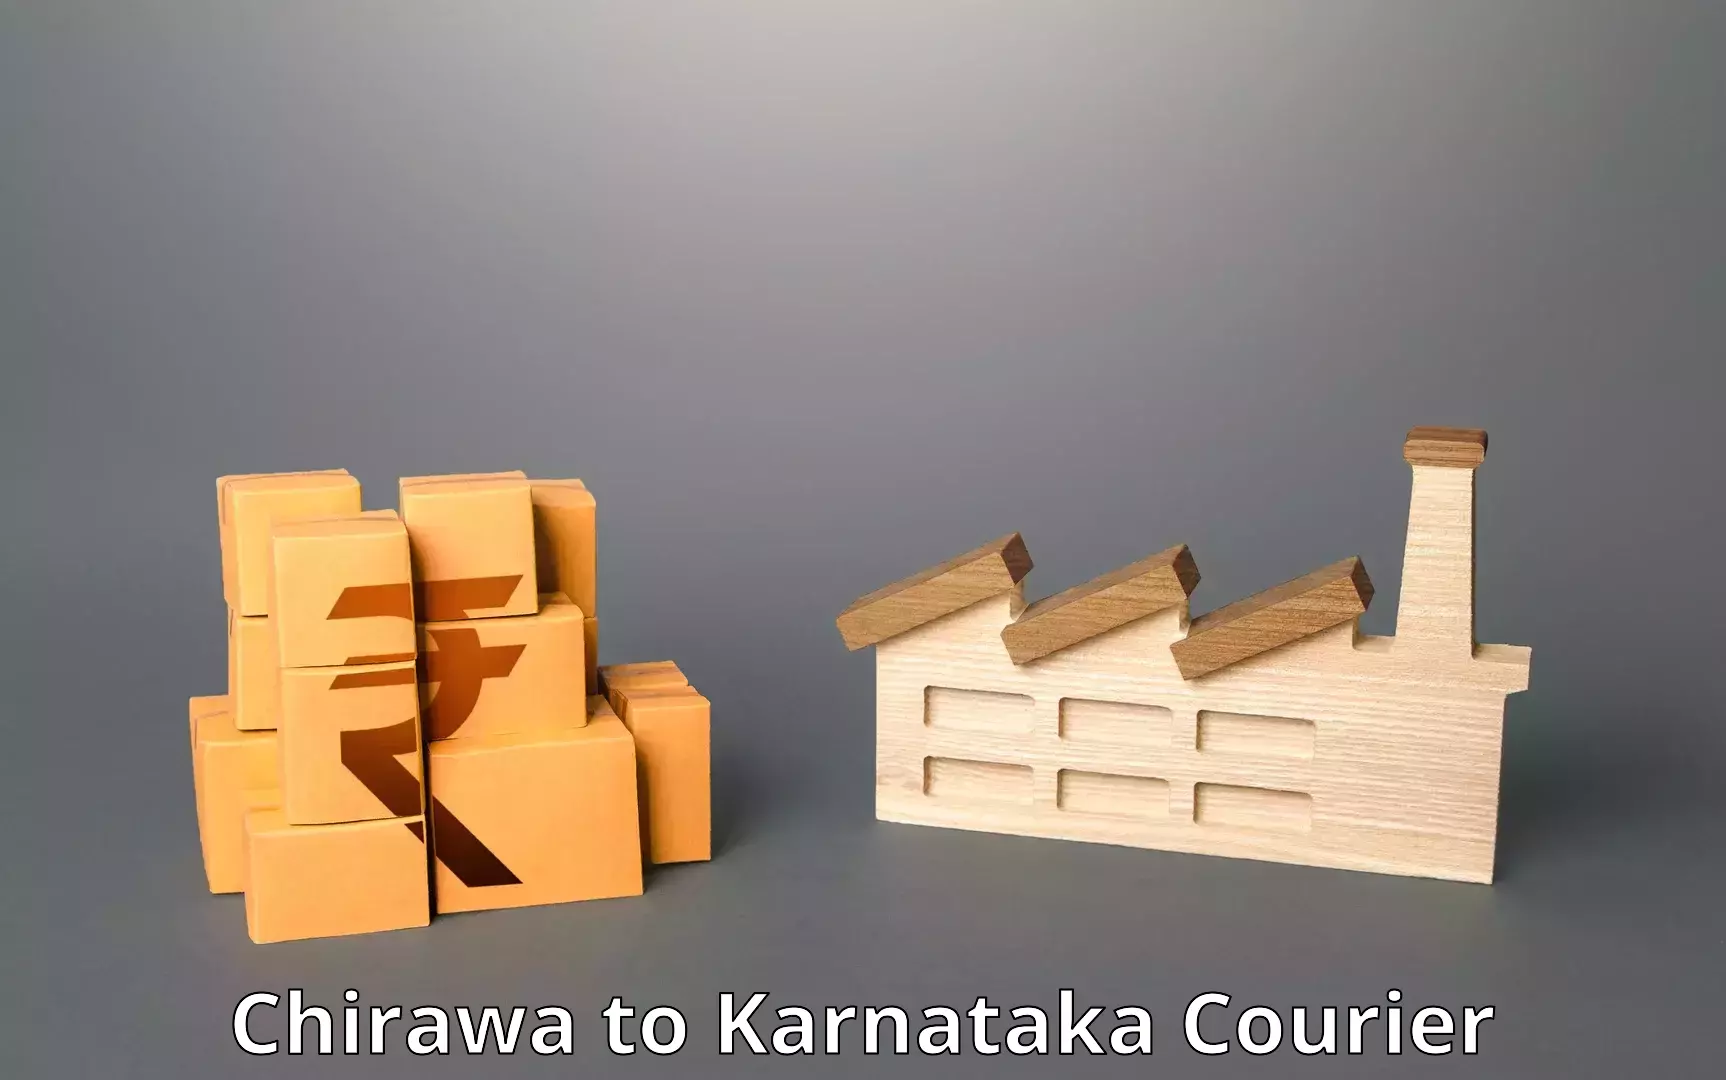 High-performance logistics in Chirawa to Karnataka